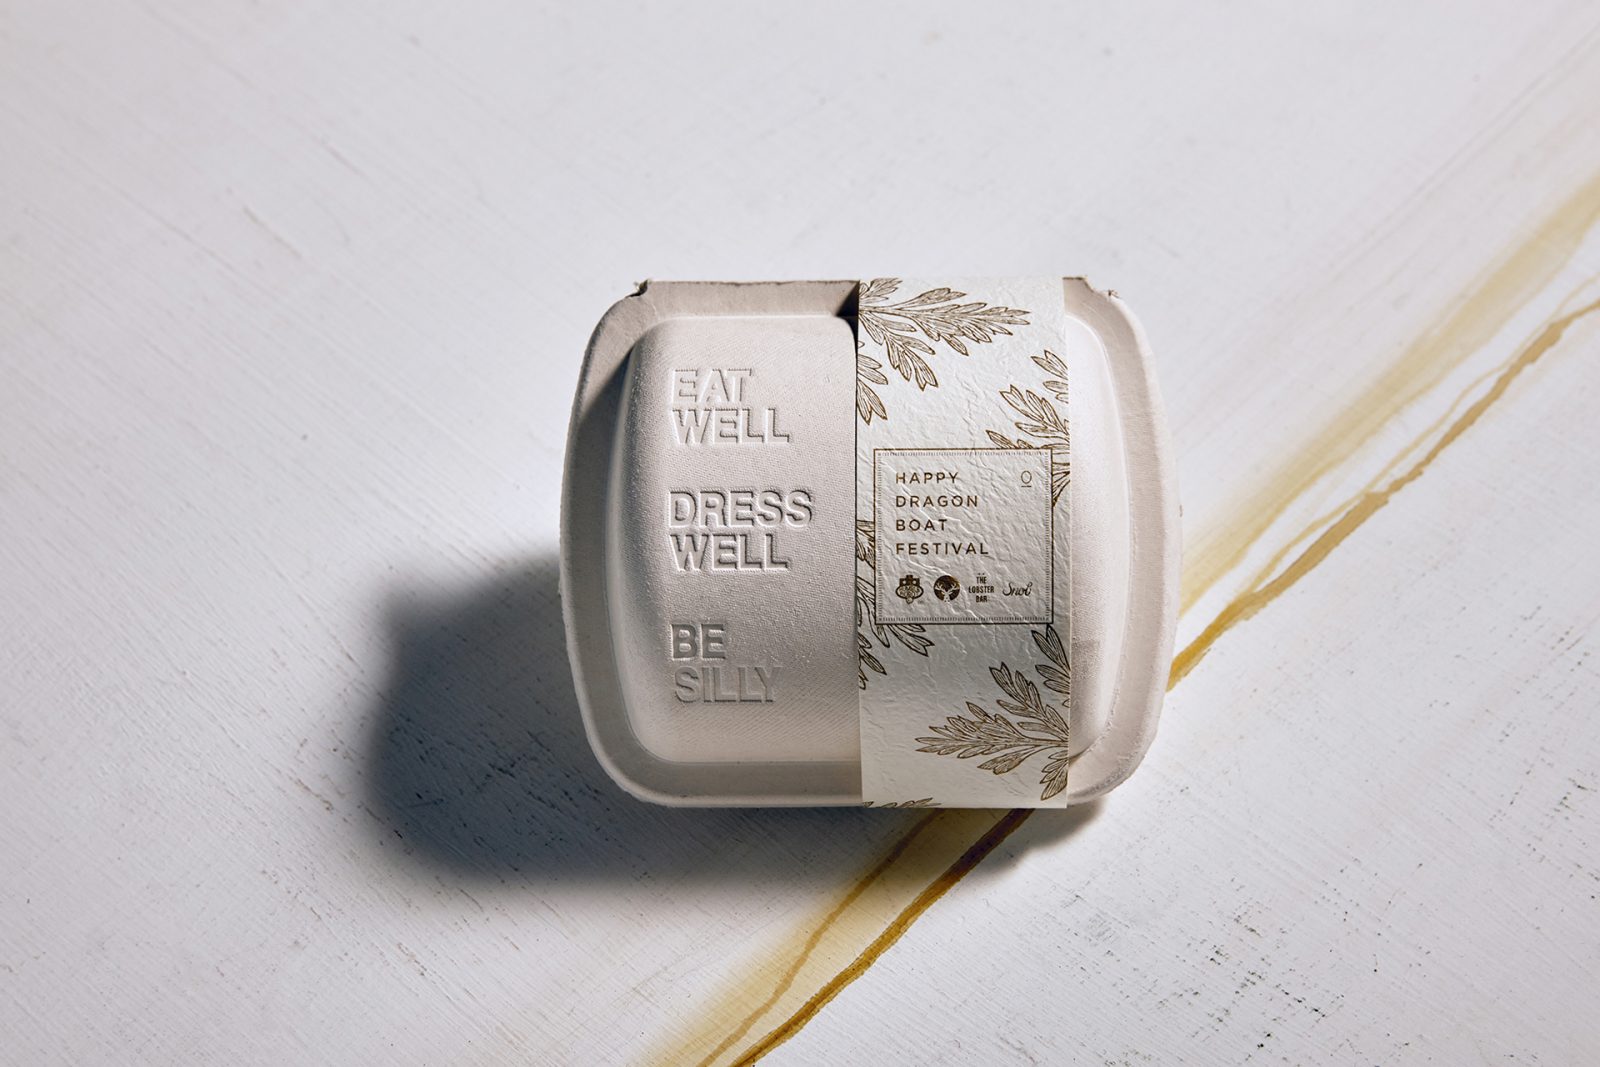 Eggellent Egg Packaging Design: Traditional vs Innovative